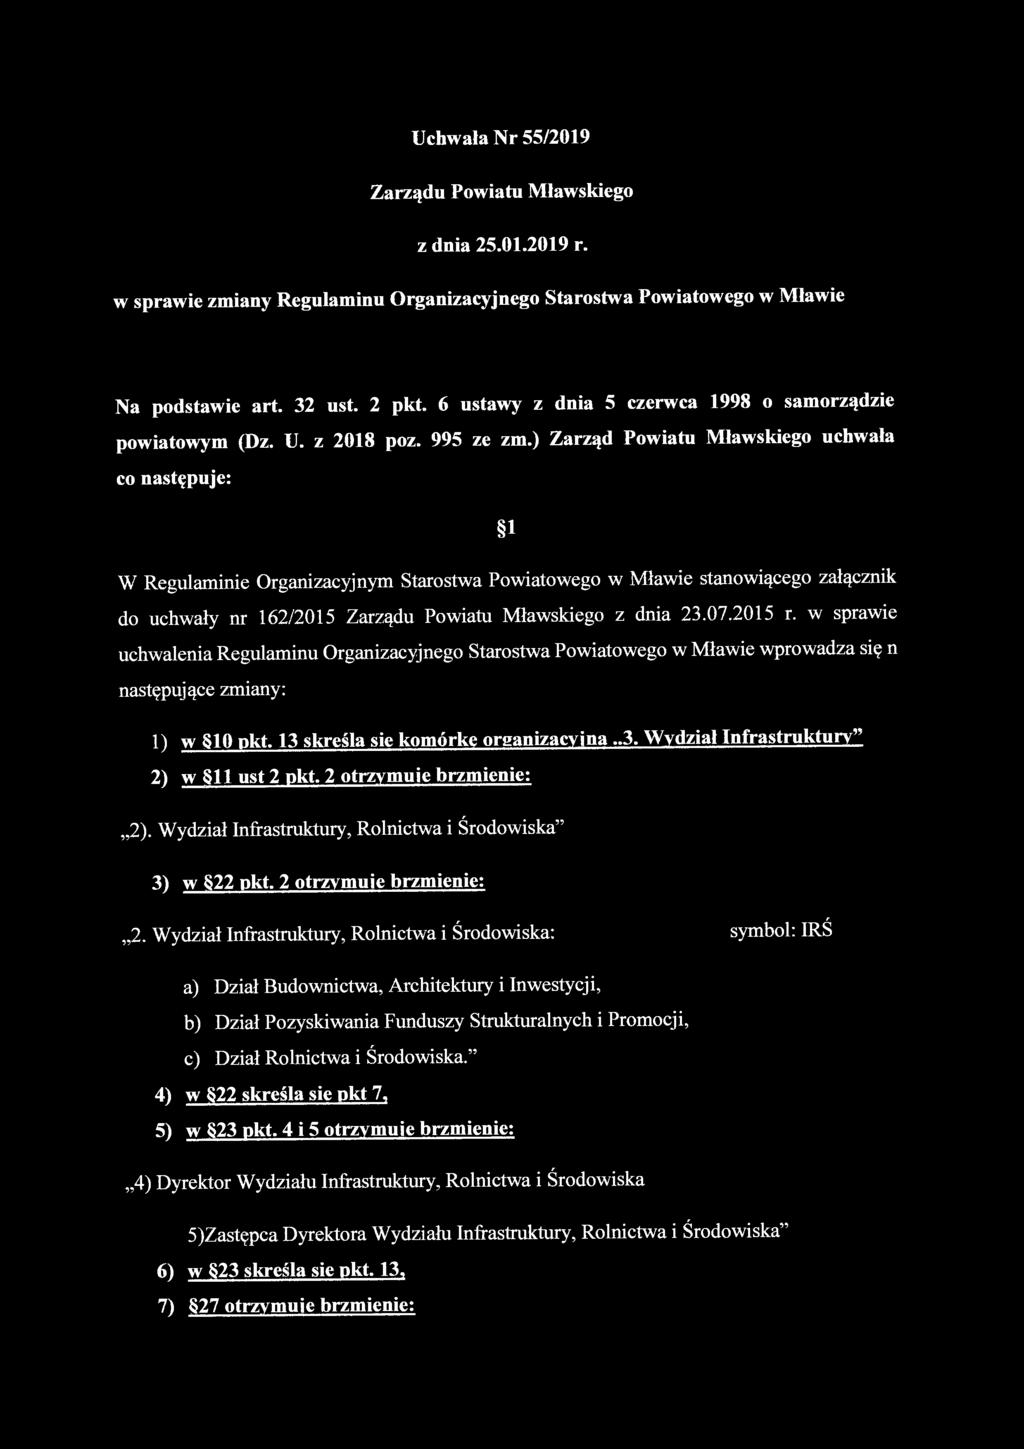 Uchwała Nr 55/2019 Zarządu Powiatu Mławskiego z dnia 25.01.2019 r. w sprawie zmiany Regulaminu Organizacyjnego Starostwa Powiatowego w Mławie Na podstawie art. 32 ust. 2 pkt.